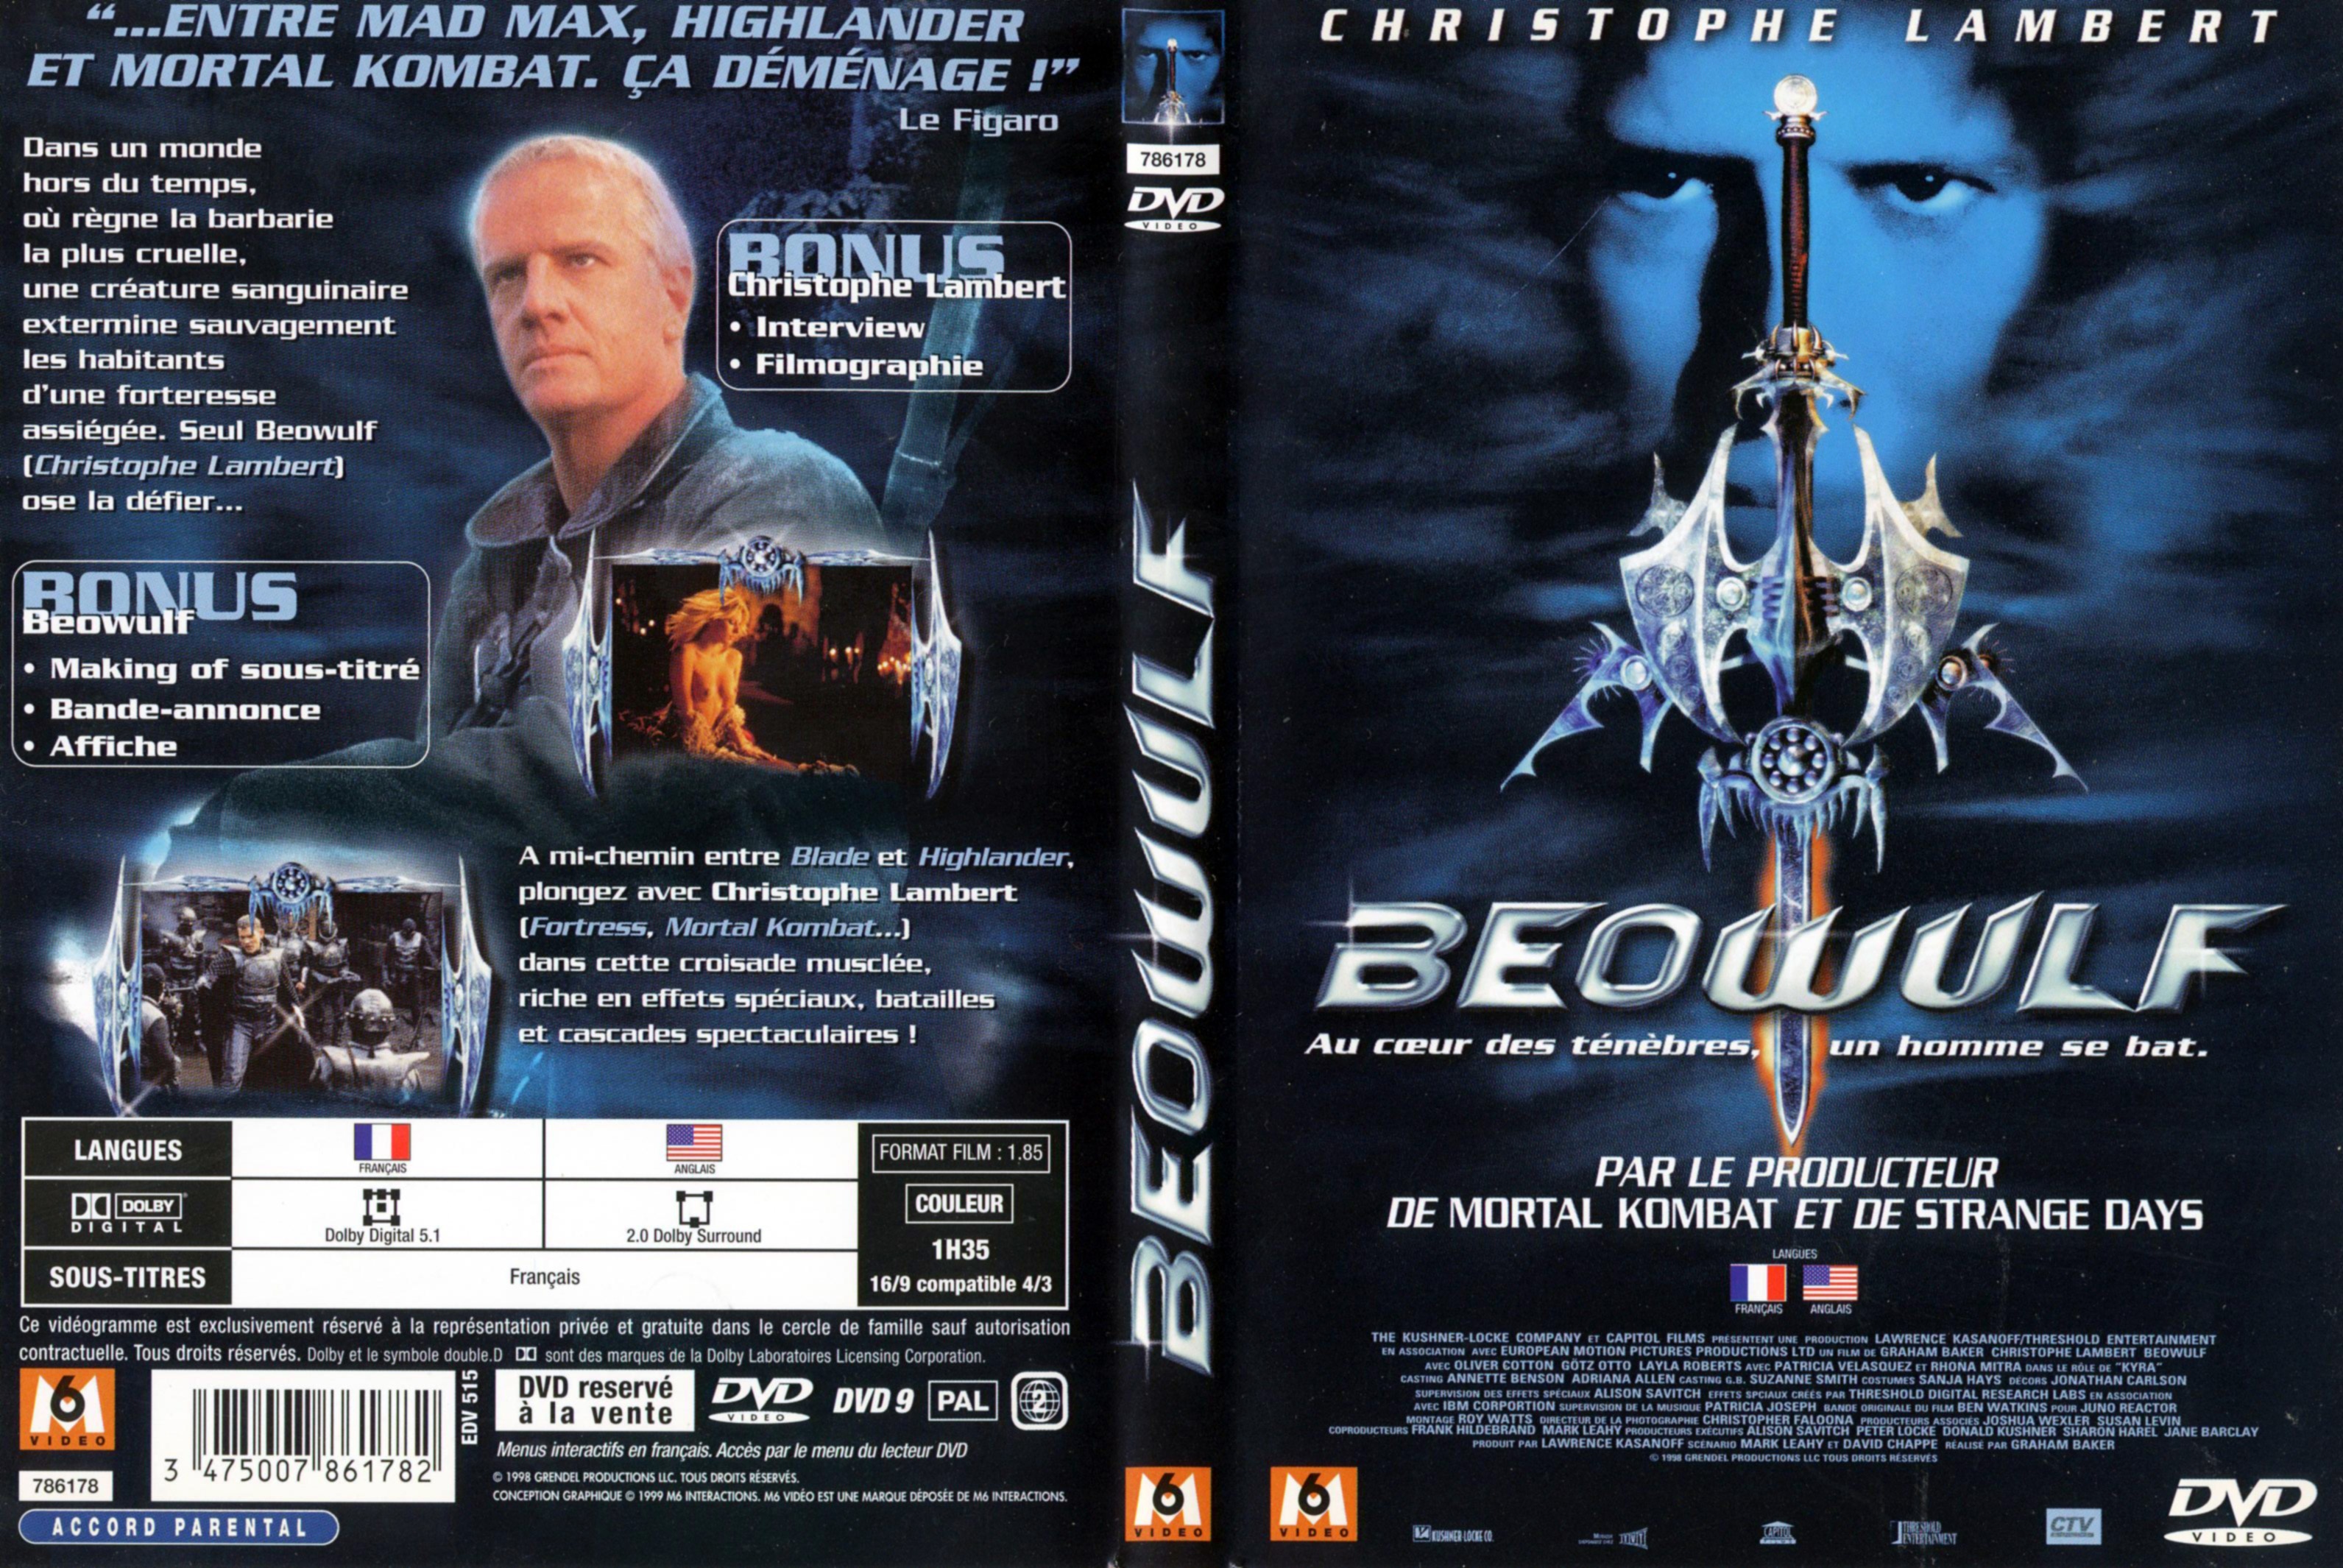 Jaquette DVD Beowulf v2